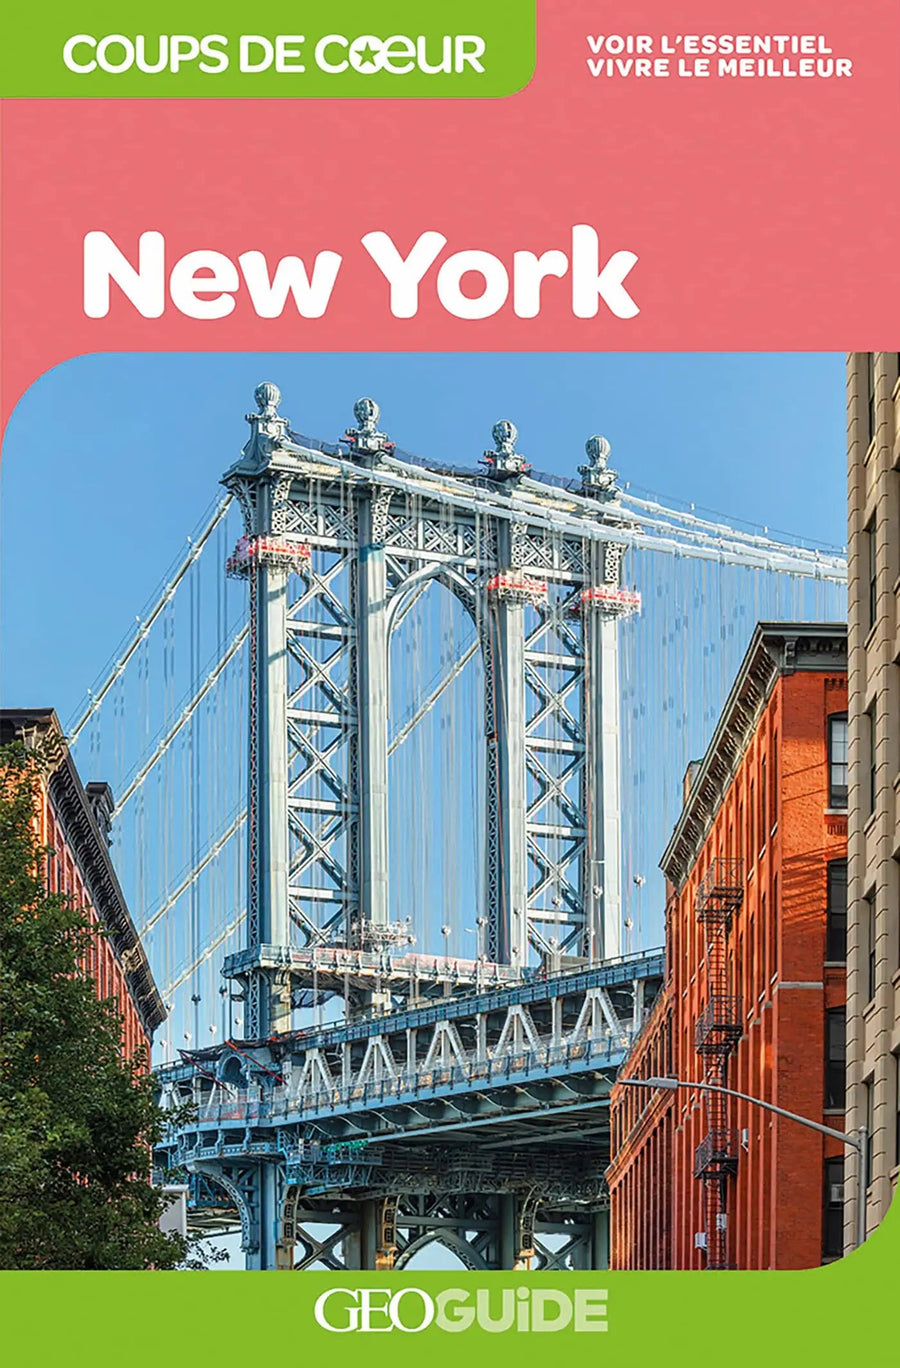 Géoguide (coups de coeur) - New York | Gallimard guide de voyage Gallimard 